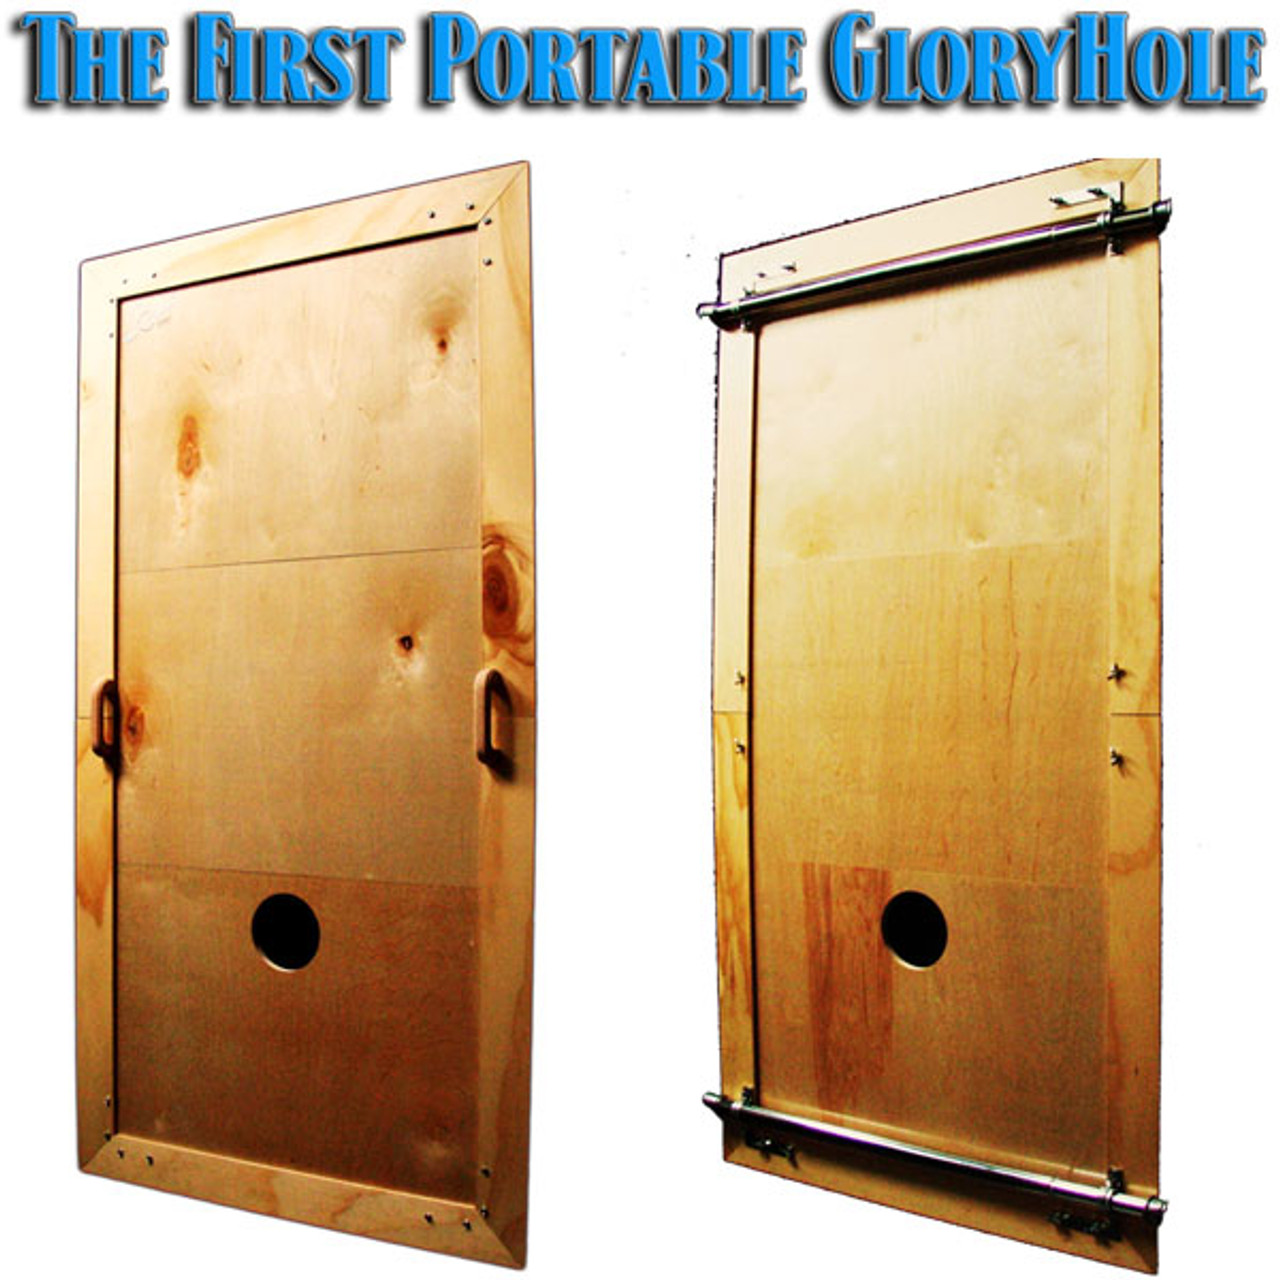 About - Buy a Portable Glory Hole at Glory Hole To Go -- Order a Mobile Glory  Hole -- Build a glory hole